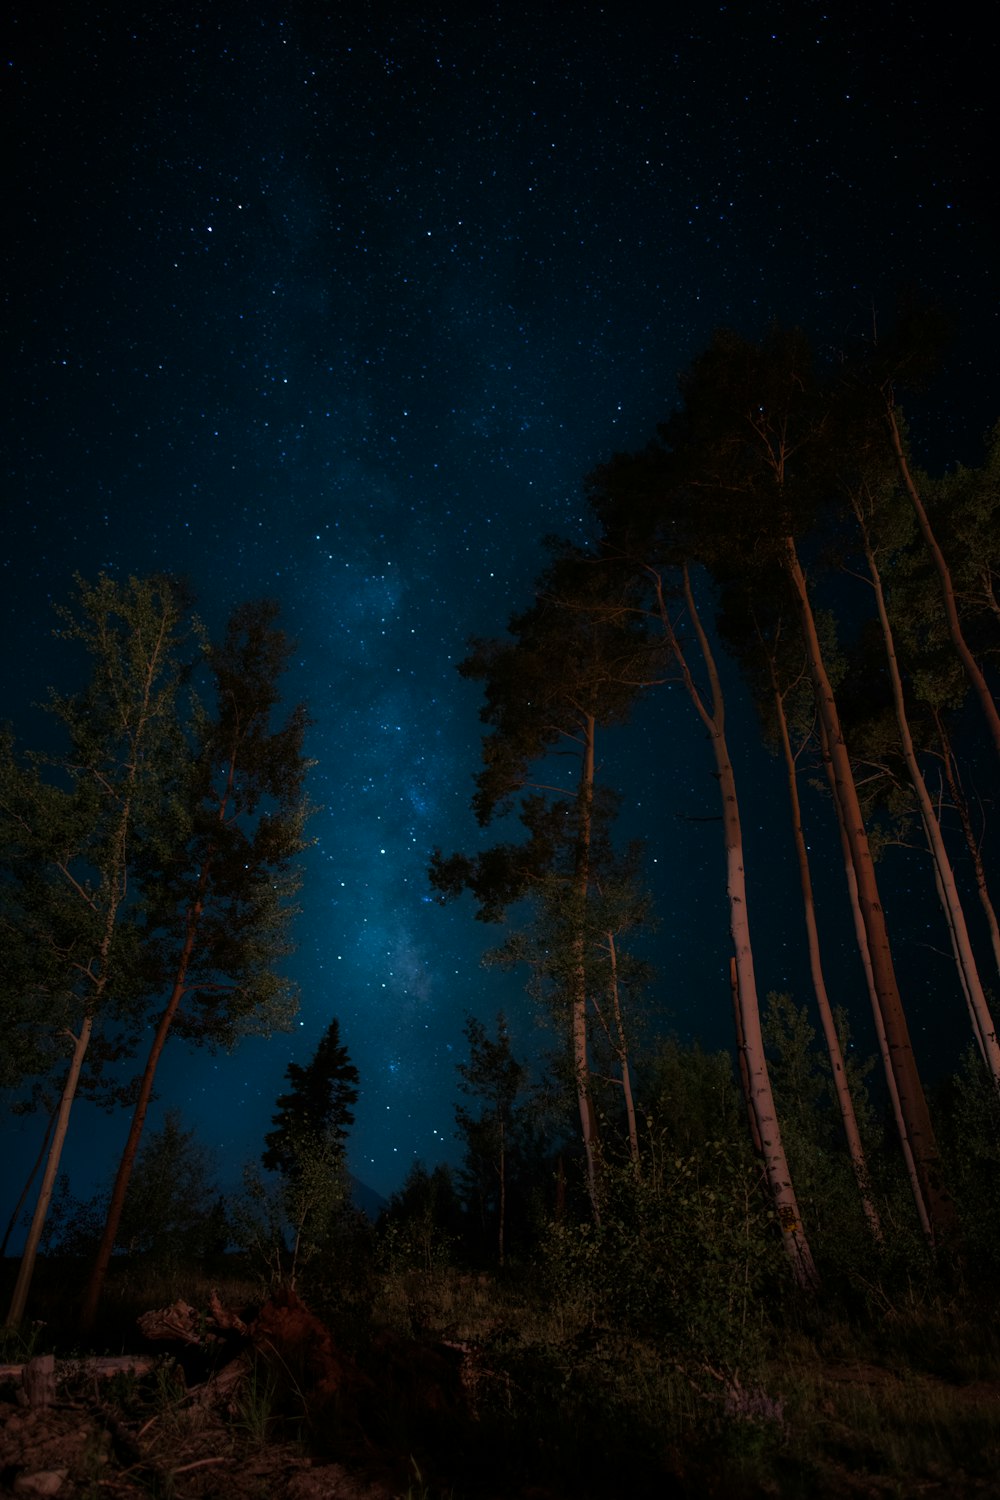 alberi verdi sotto la galassia con le stelle